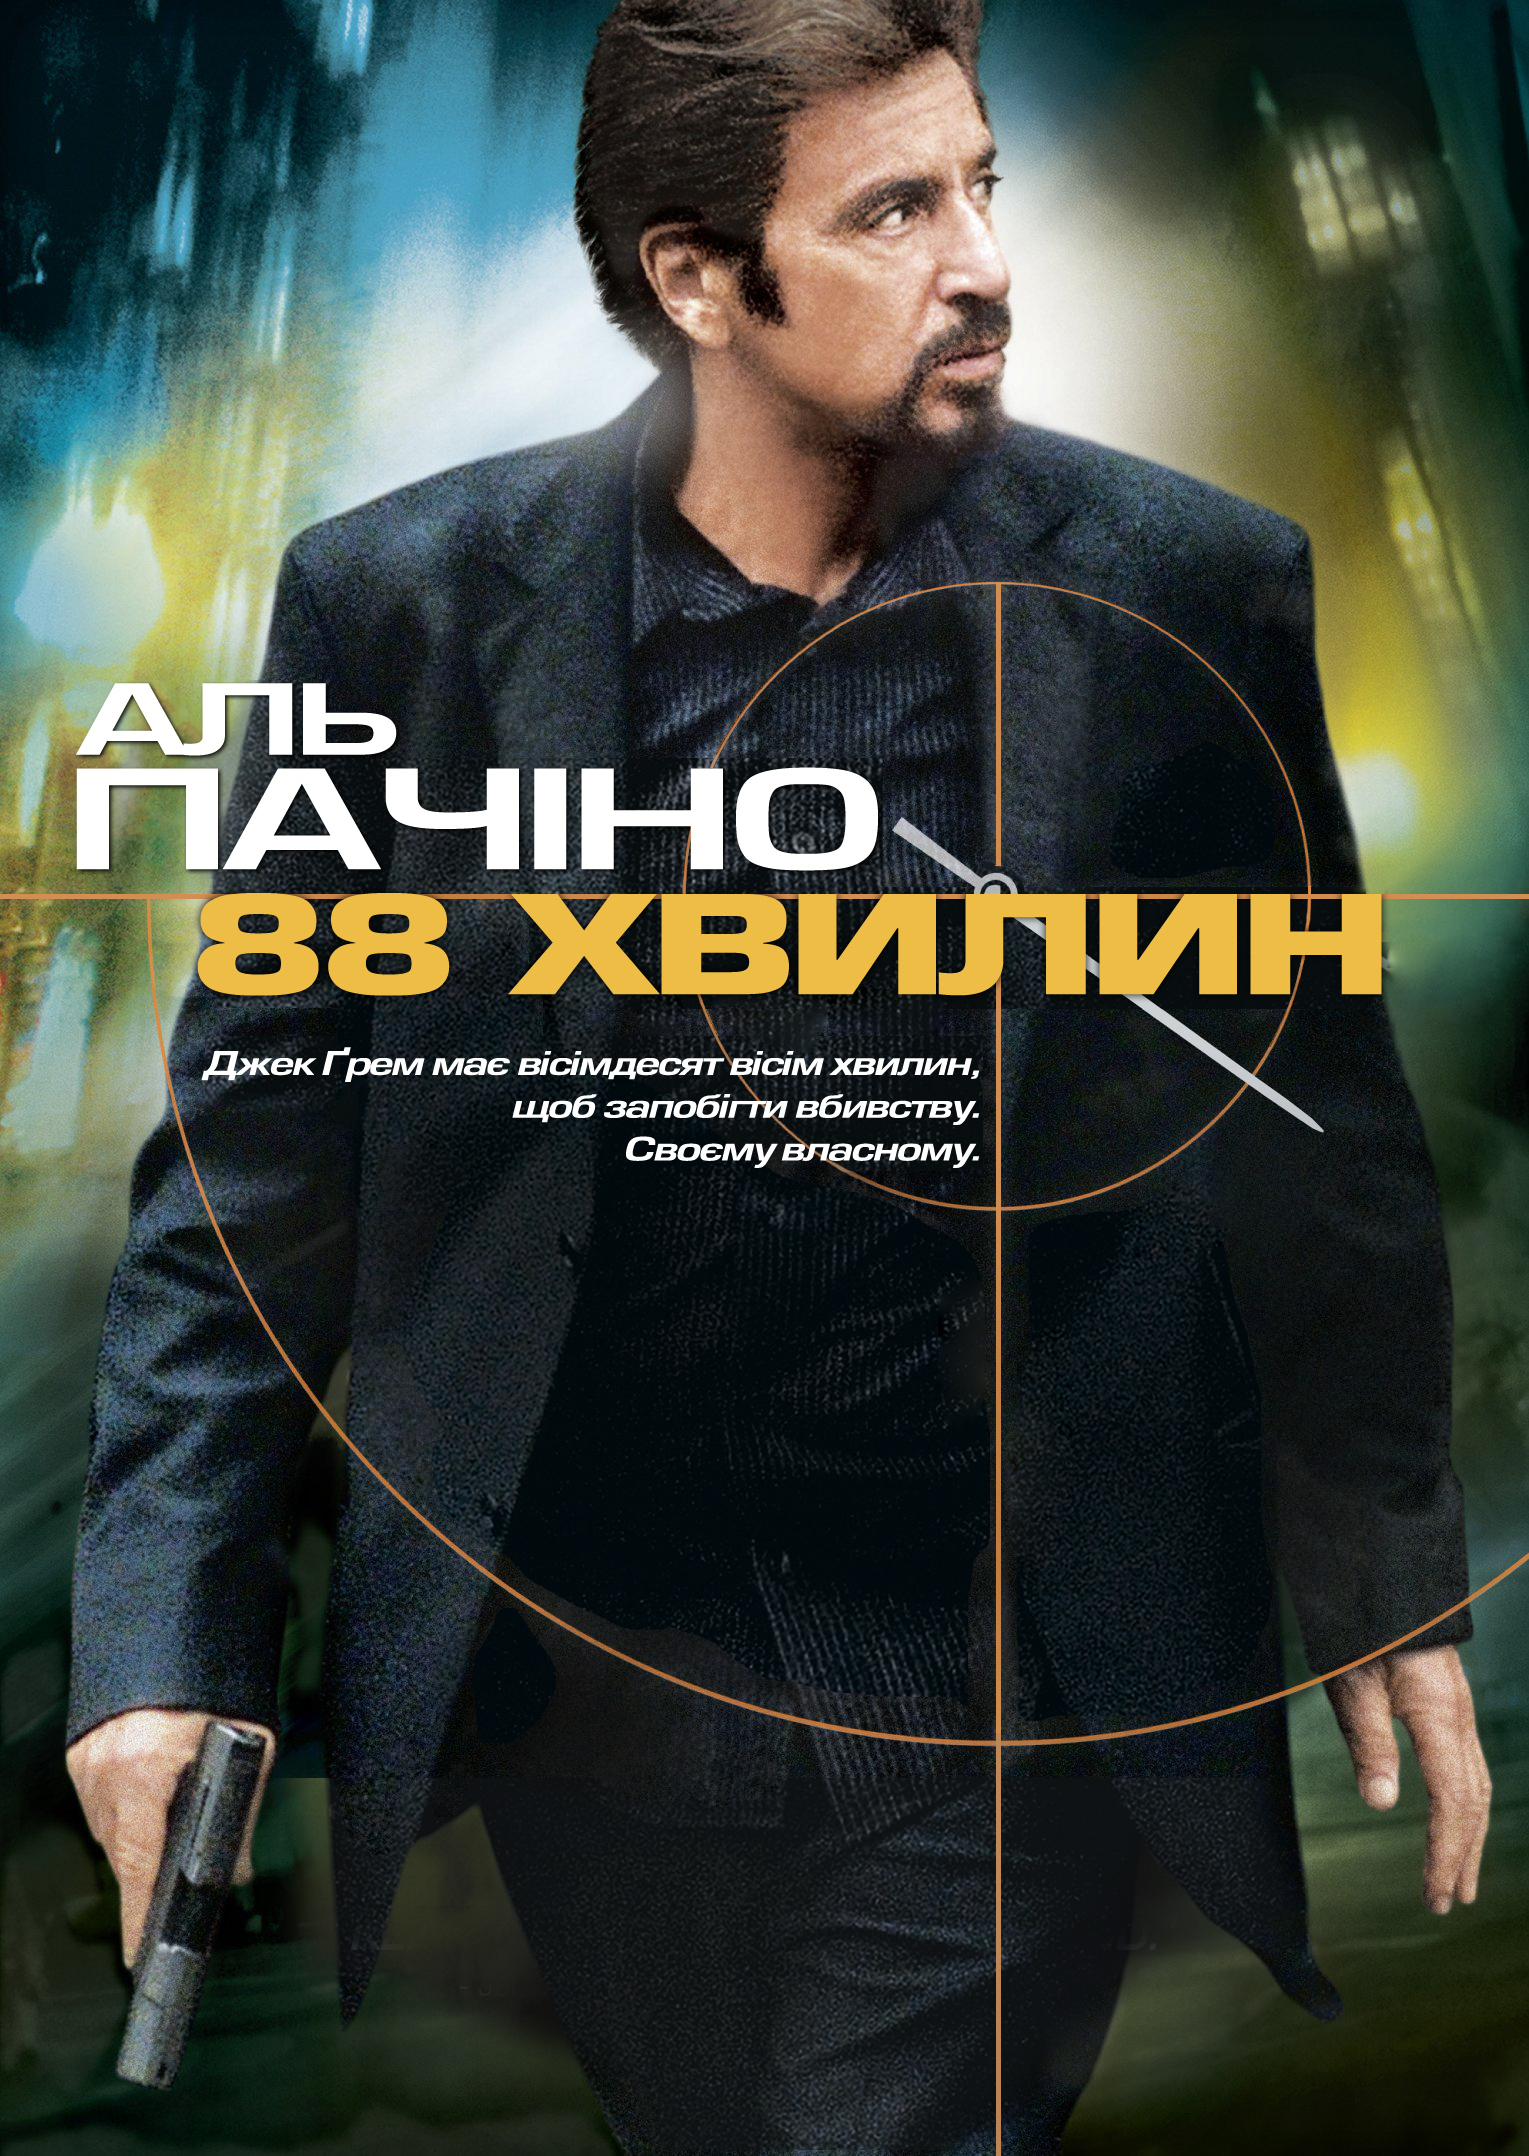 88 минут 2007. 88 Минут / 88 minutes / 2007 постеры. 88 Minutes 2007 poster.